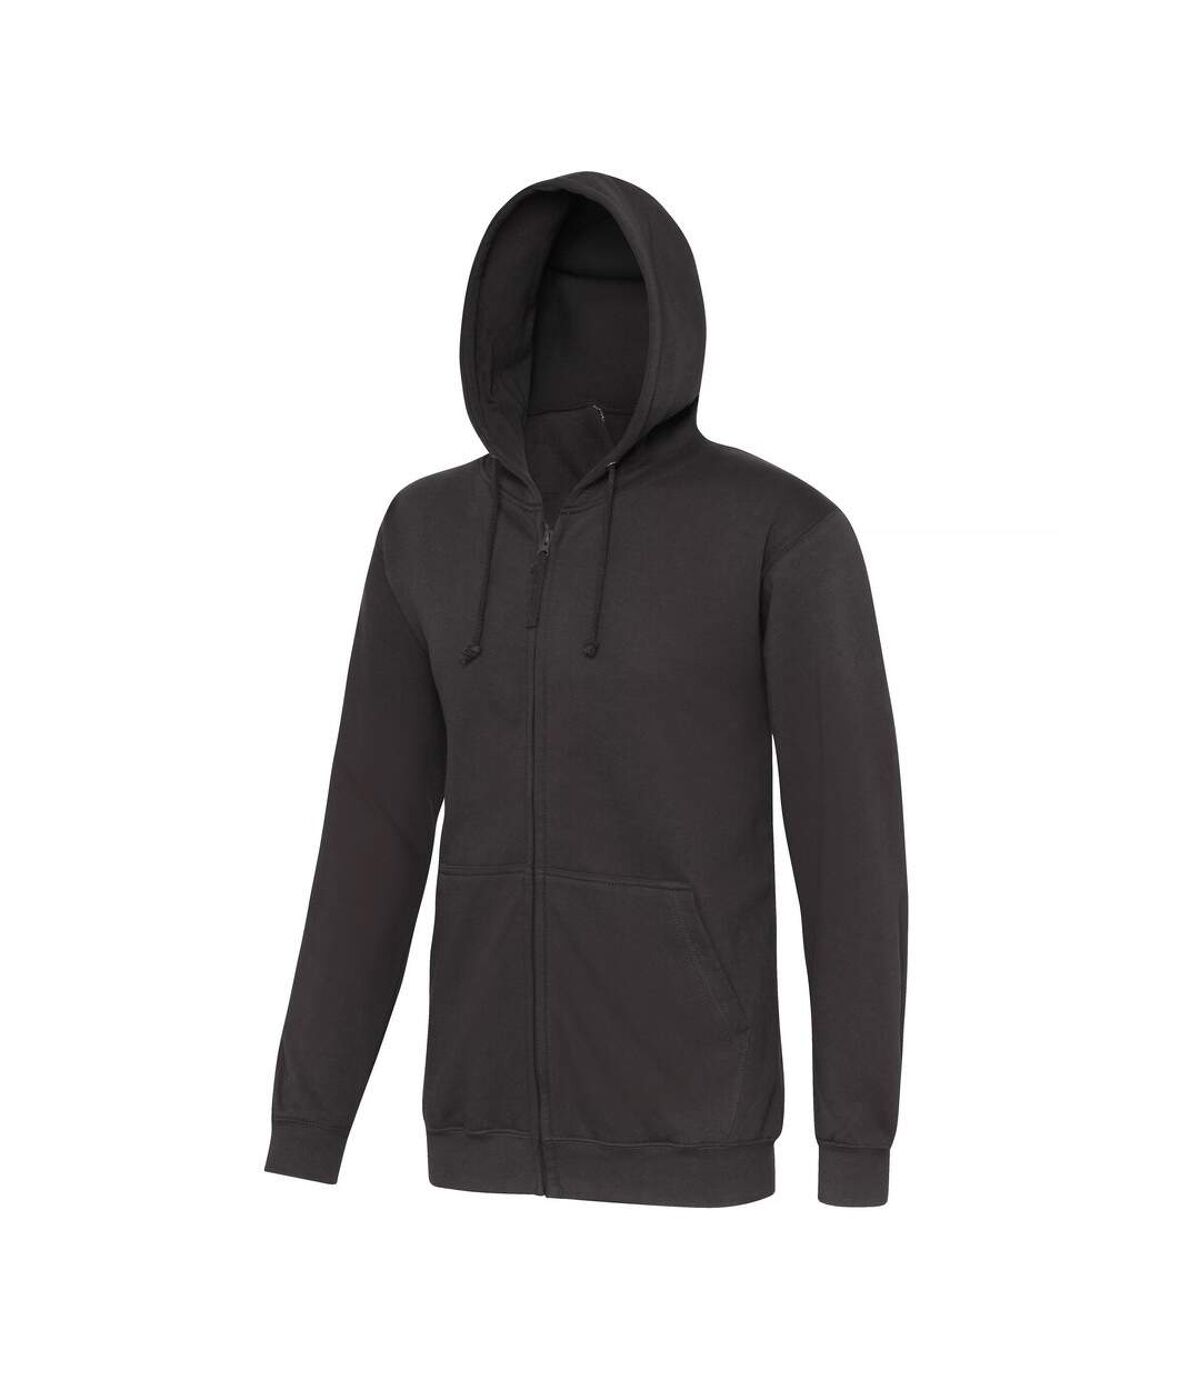 Awdis - Sweatshirt à capuche et fermeture zippée - Homme (Gris tempÃªte) - UTRW180